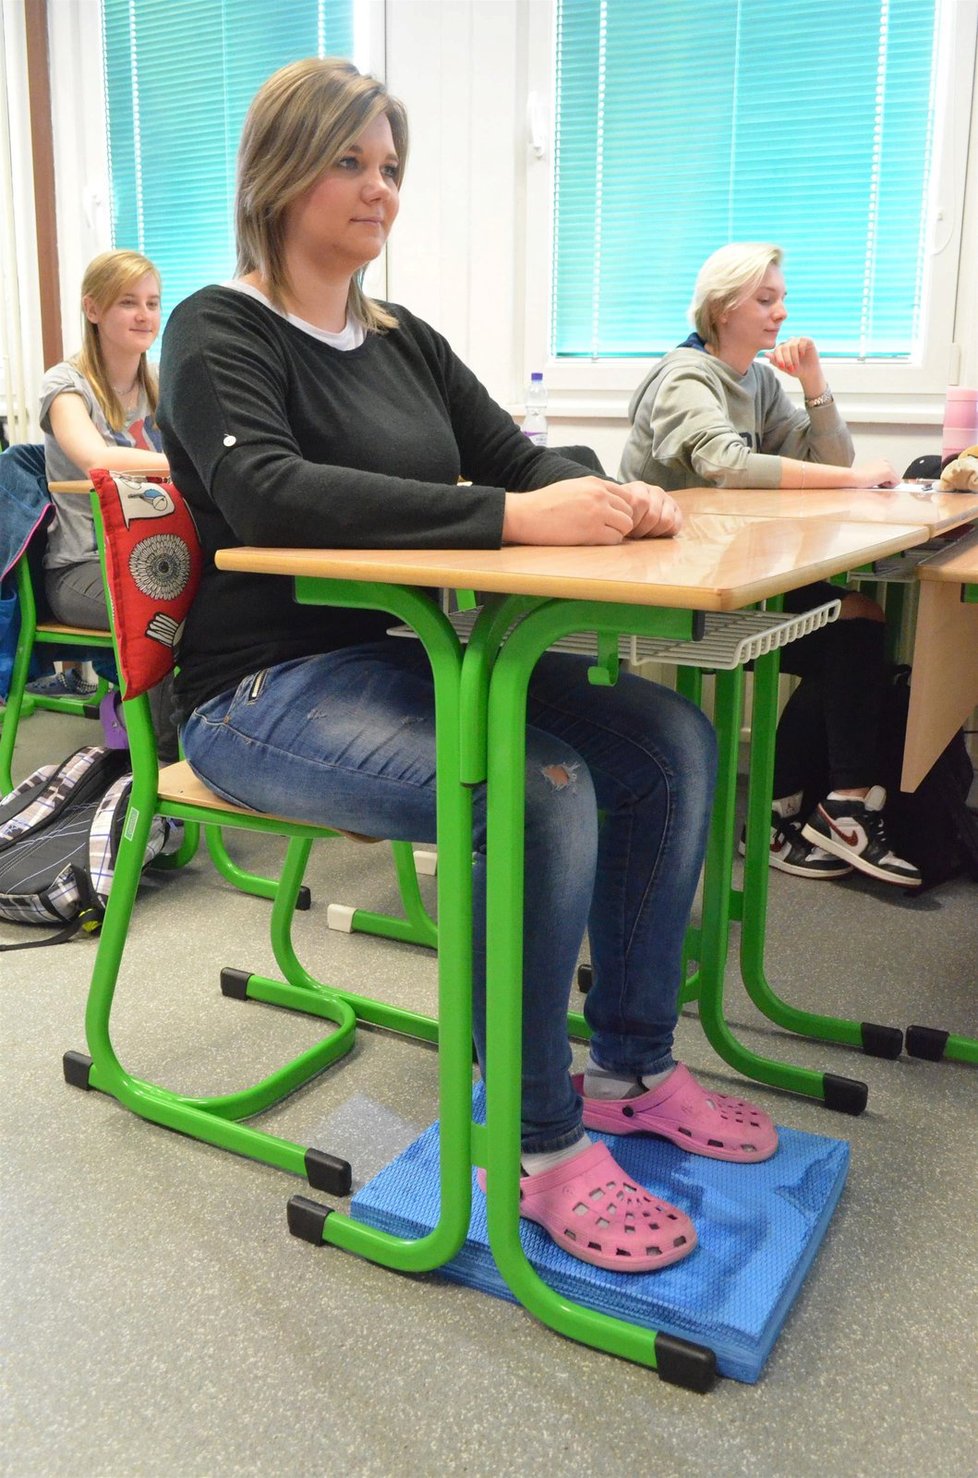 Protože ve školách jsou většinou pouze tři velikosti židlí, pomůže ke správnému vzpřímenému sedu pěnová podložka pod nohy. Ta spolu s bederním polštářkem zajístí i pohodlí sedící osobě. A při tomto správném posezu jsou ještě navíc nevědomky posilovány i břišní svaly.